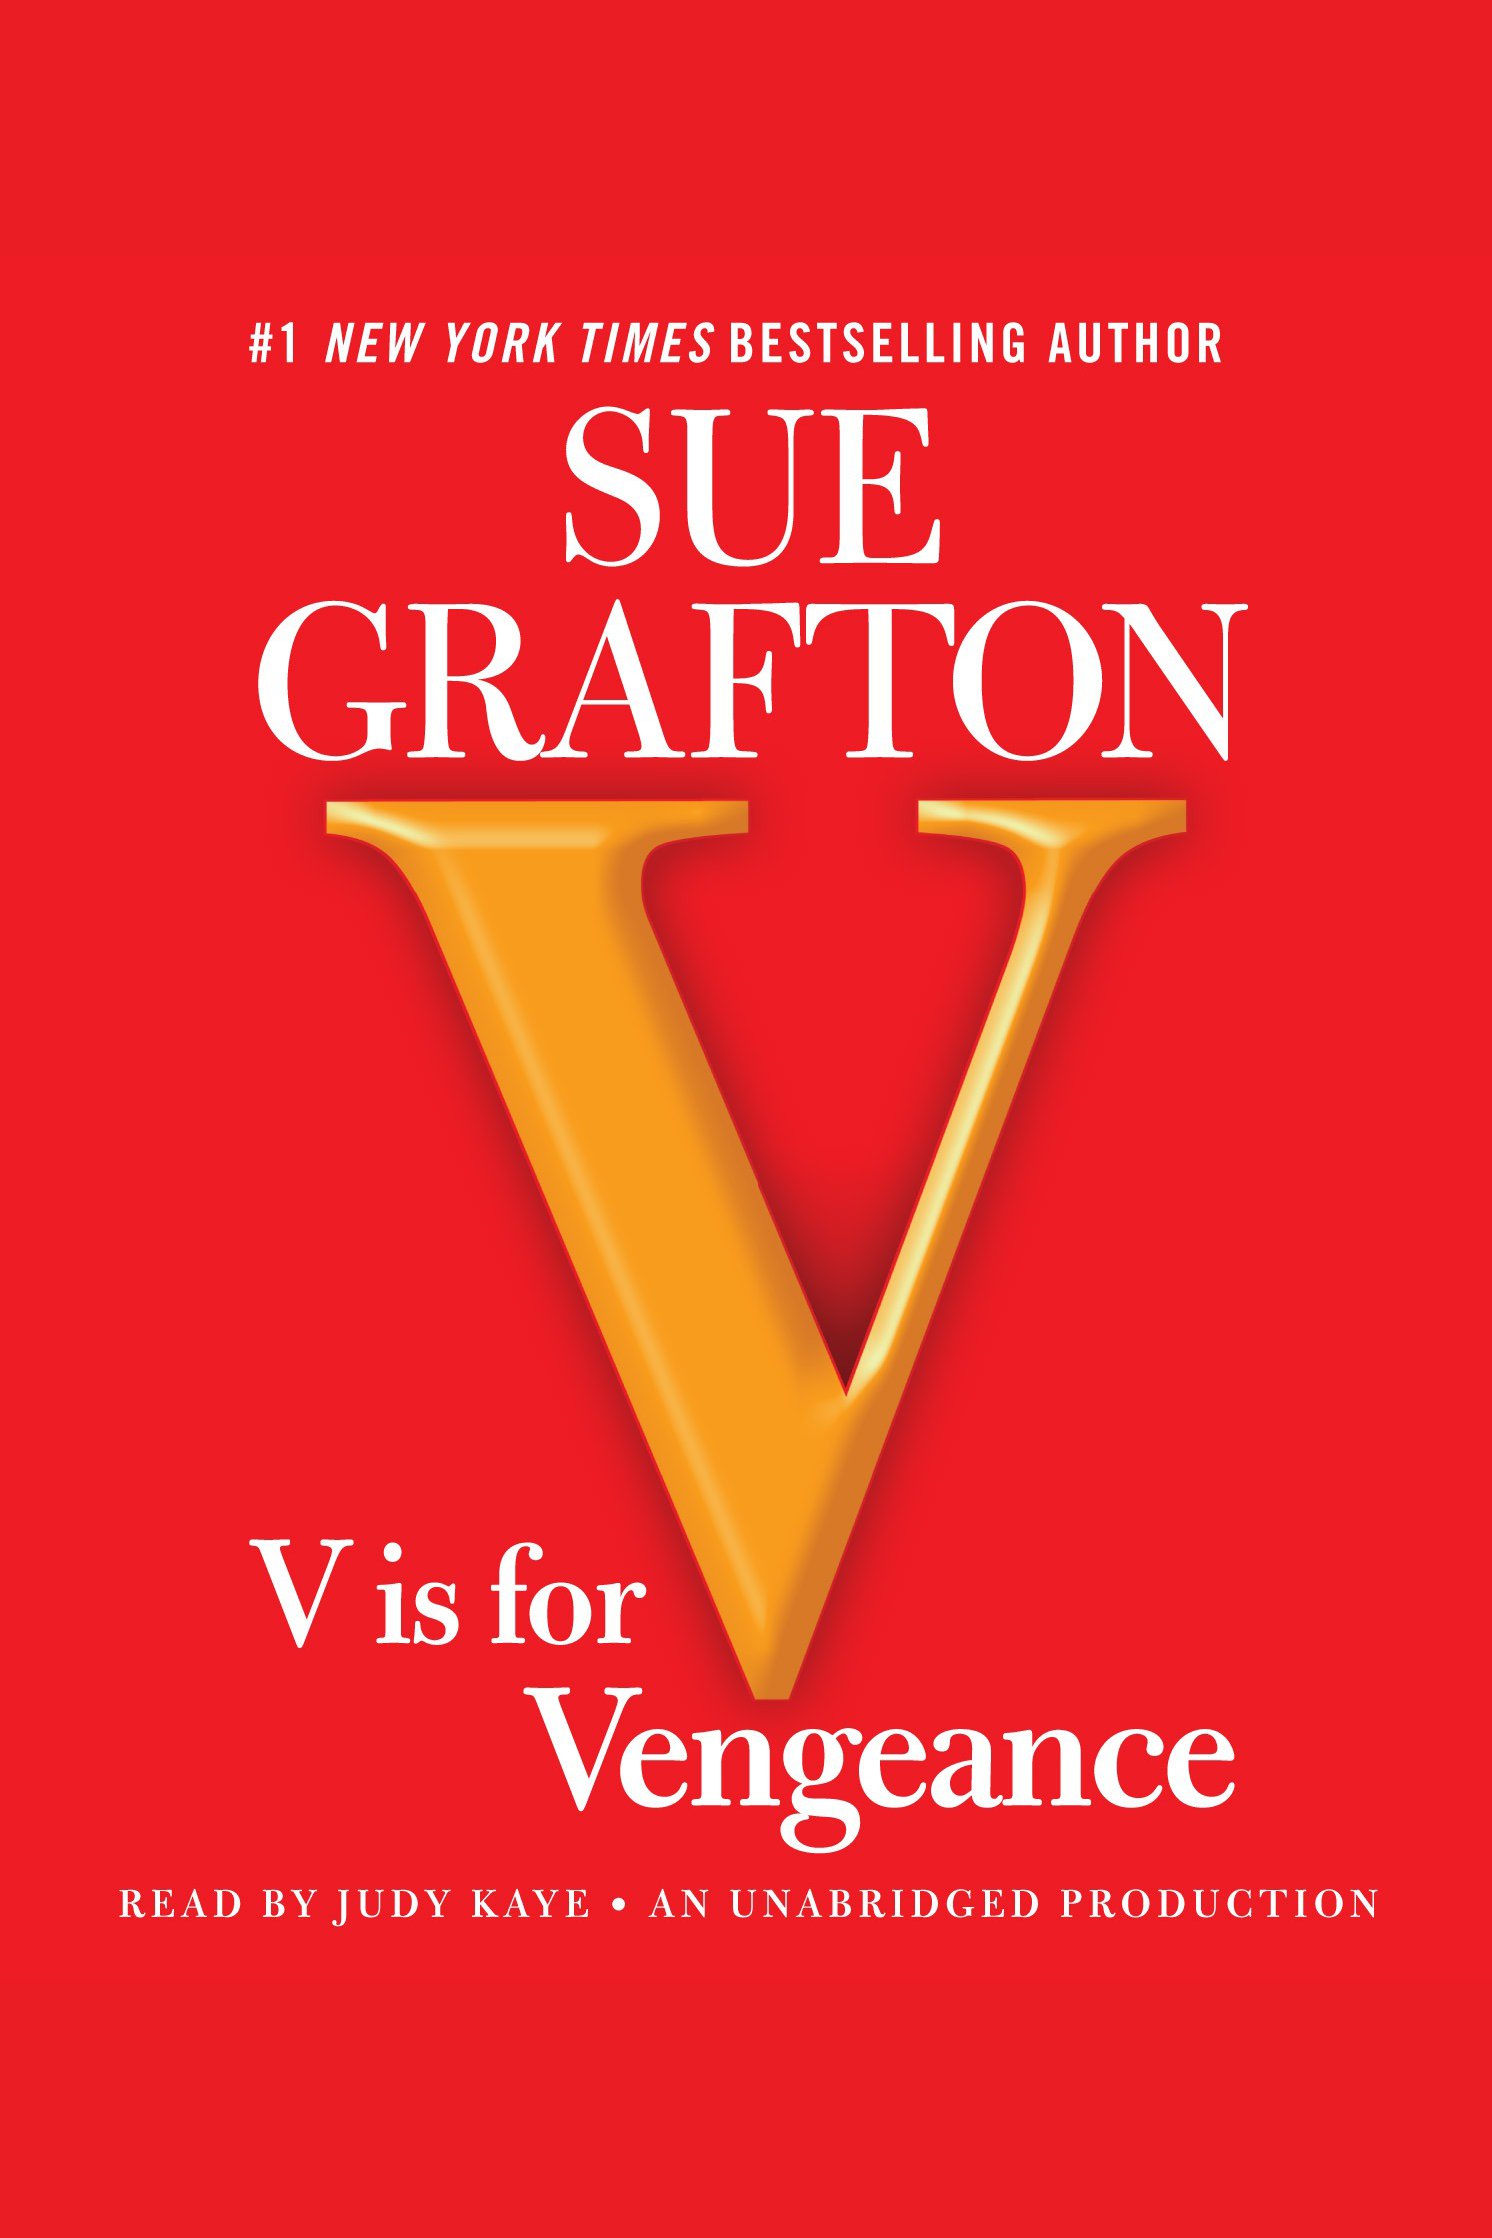 V is for vengeance cover image